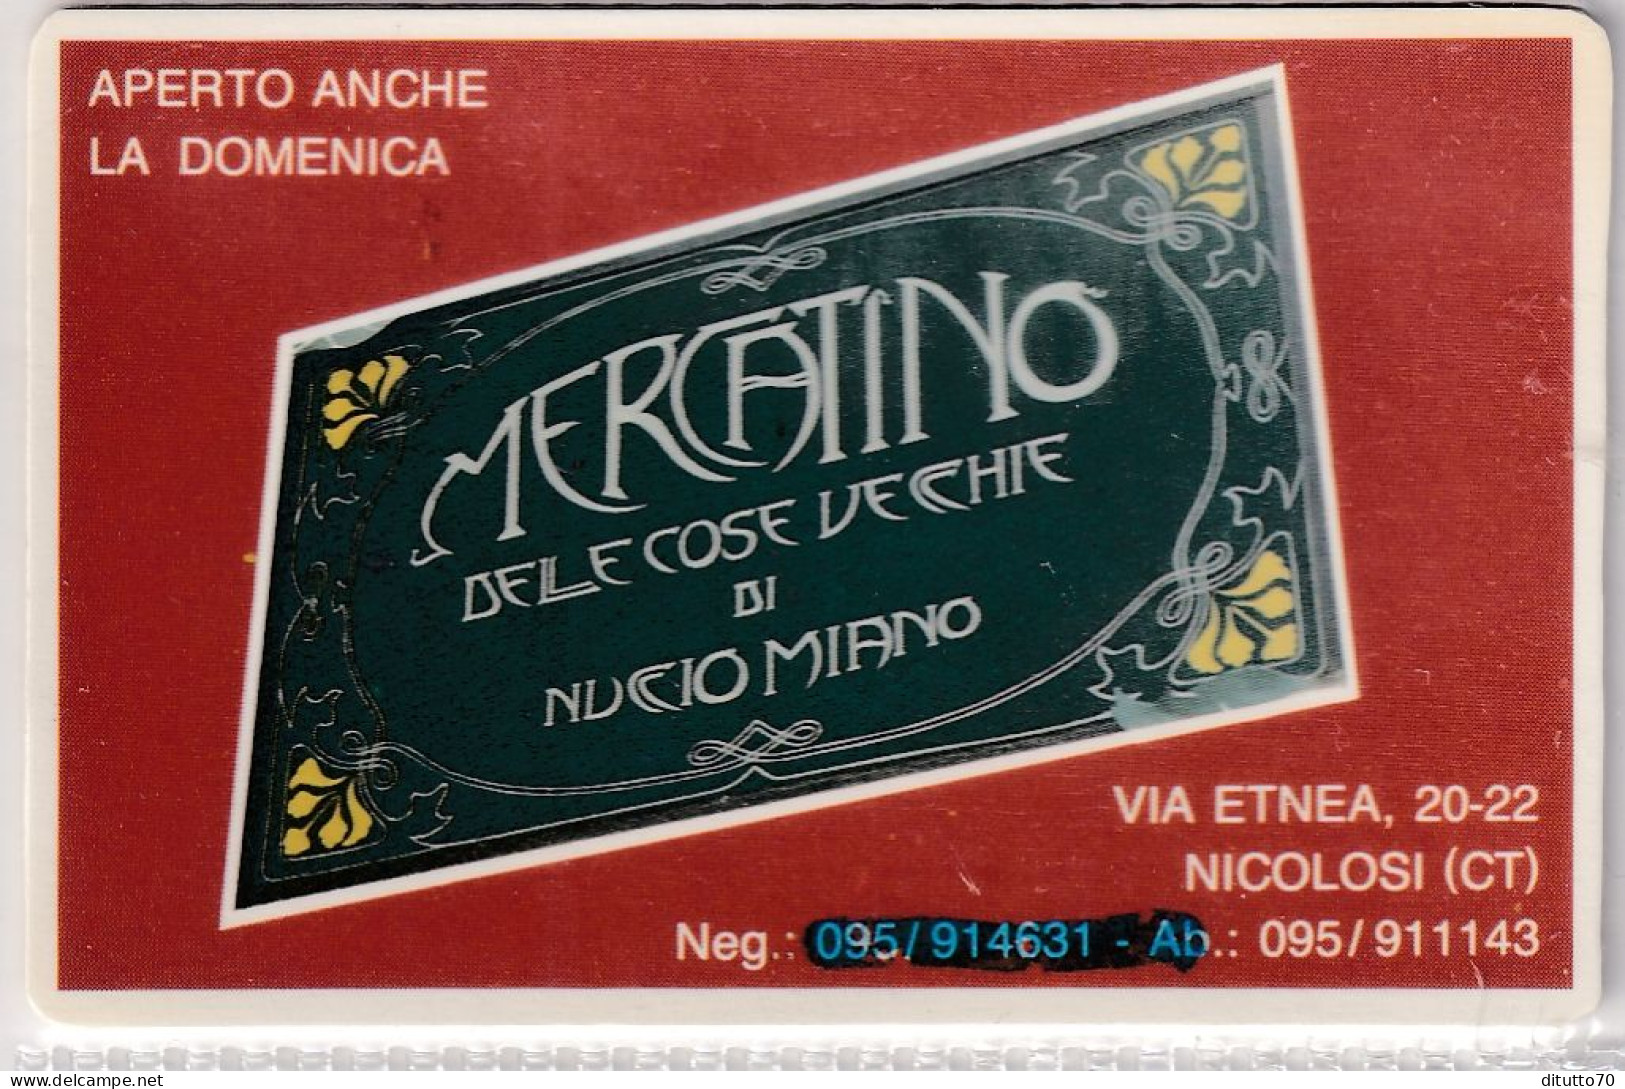 Calendarietto - Mercatino Delle Cose Vecchie - Nicolosi - Catania - Anno 1998 - Small : 1991-00